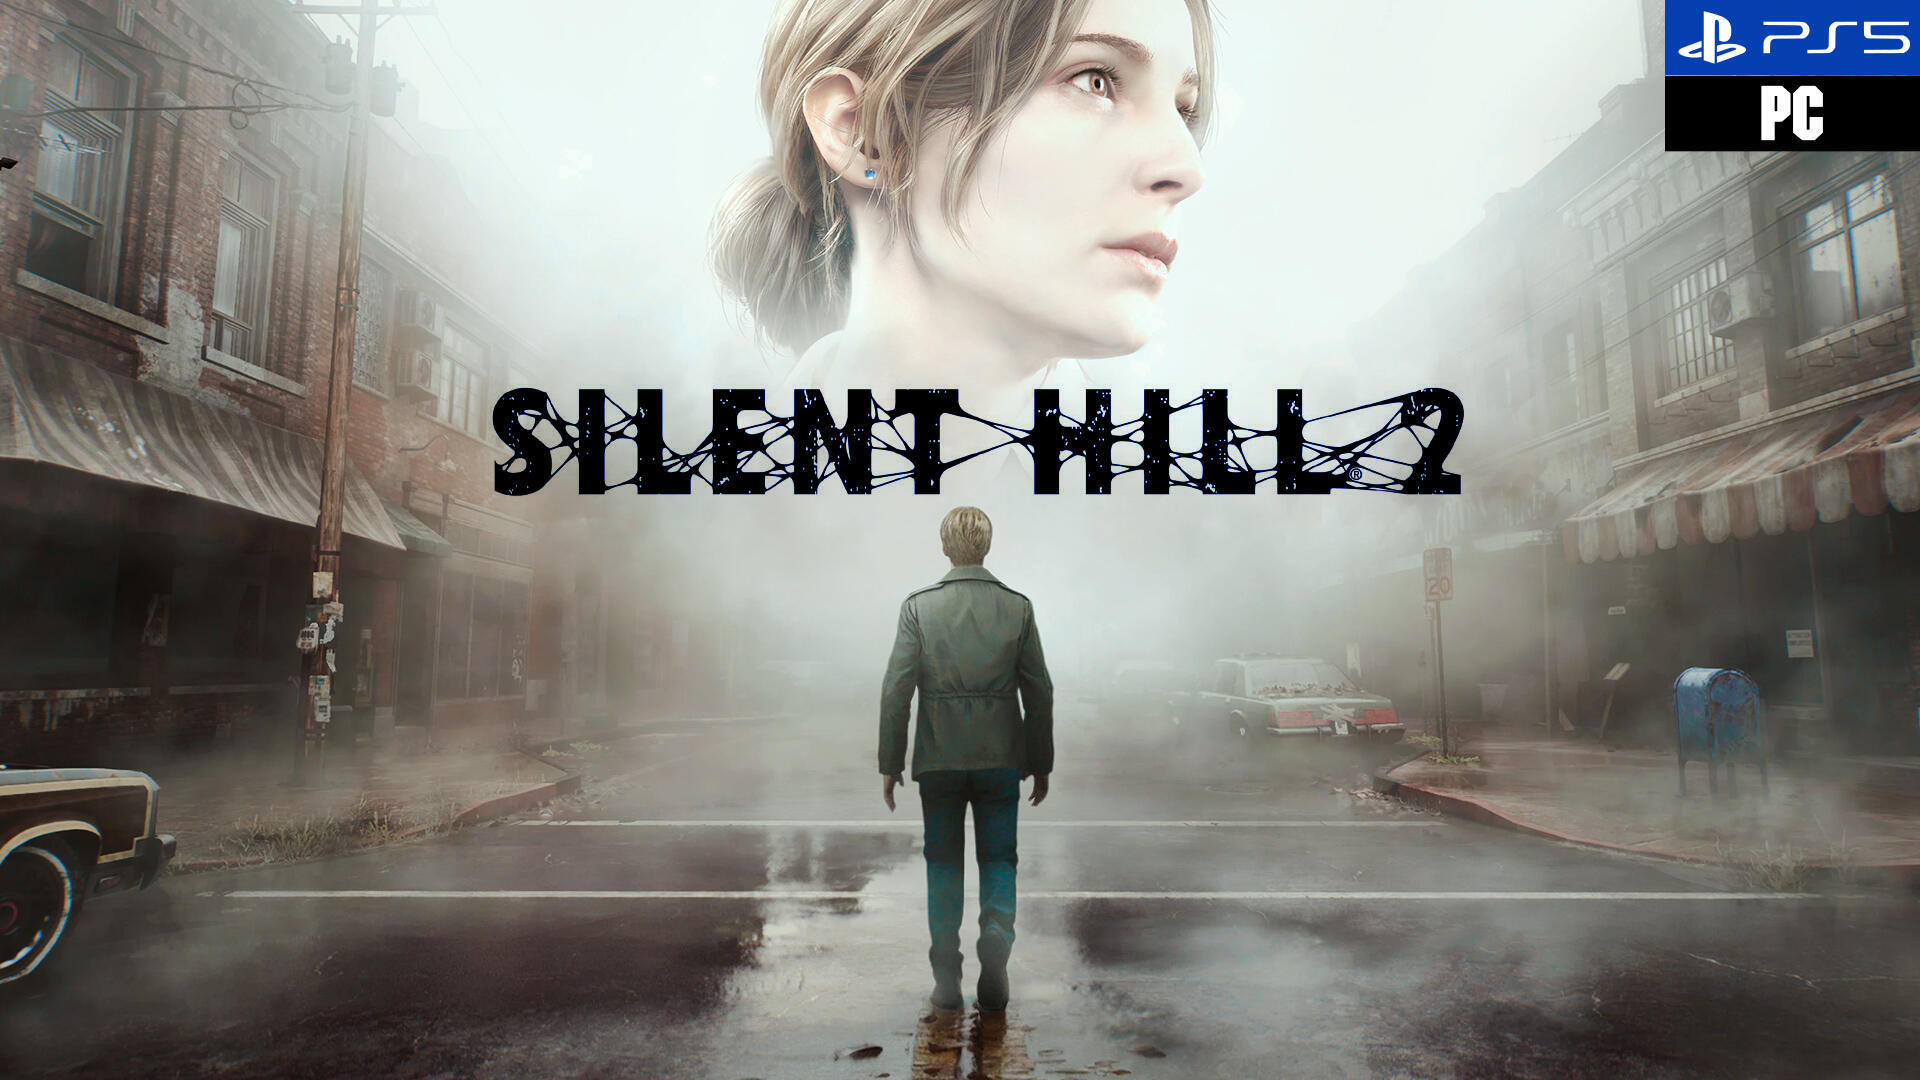 Silent Hill 2 Remake Todo lo que sabemos sobre el regreso del mítico